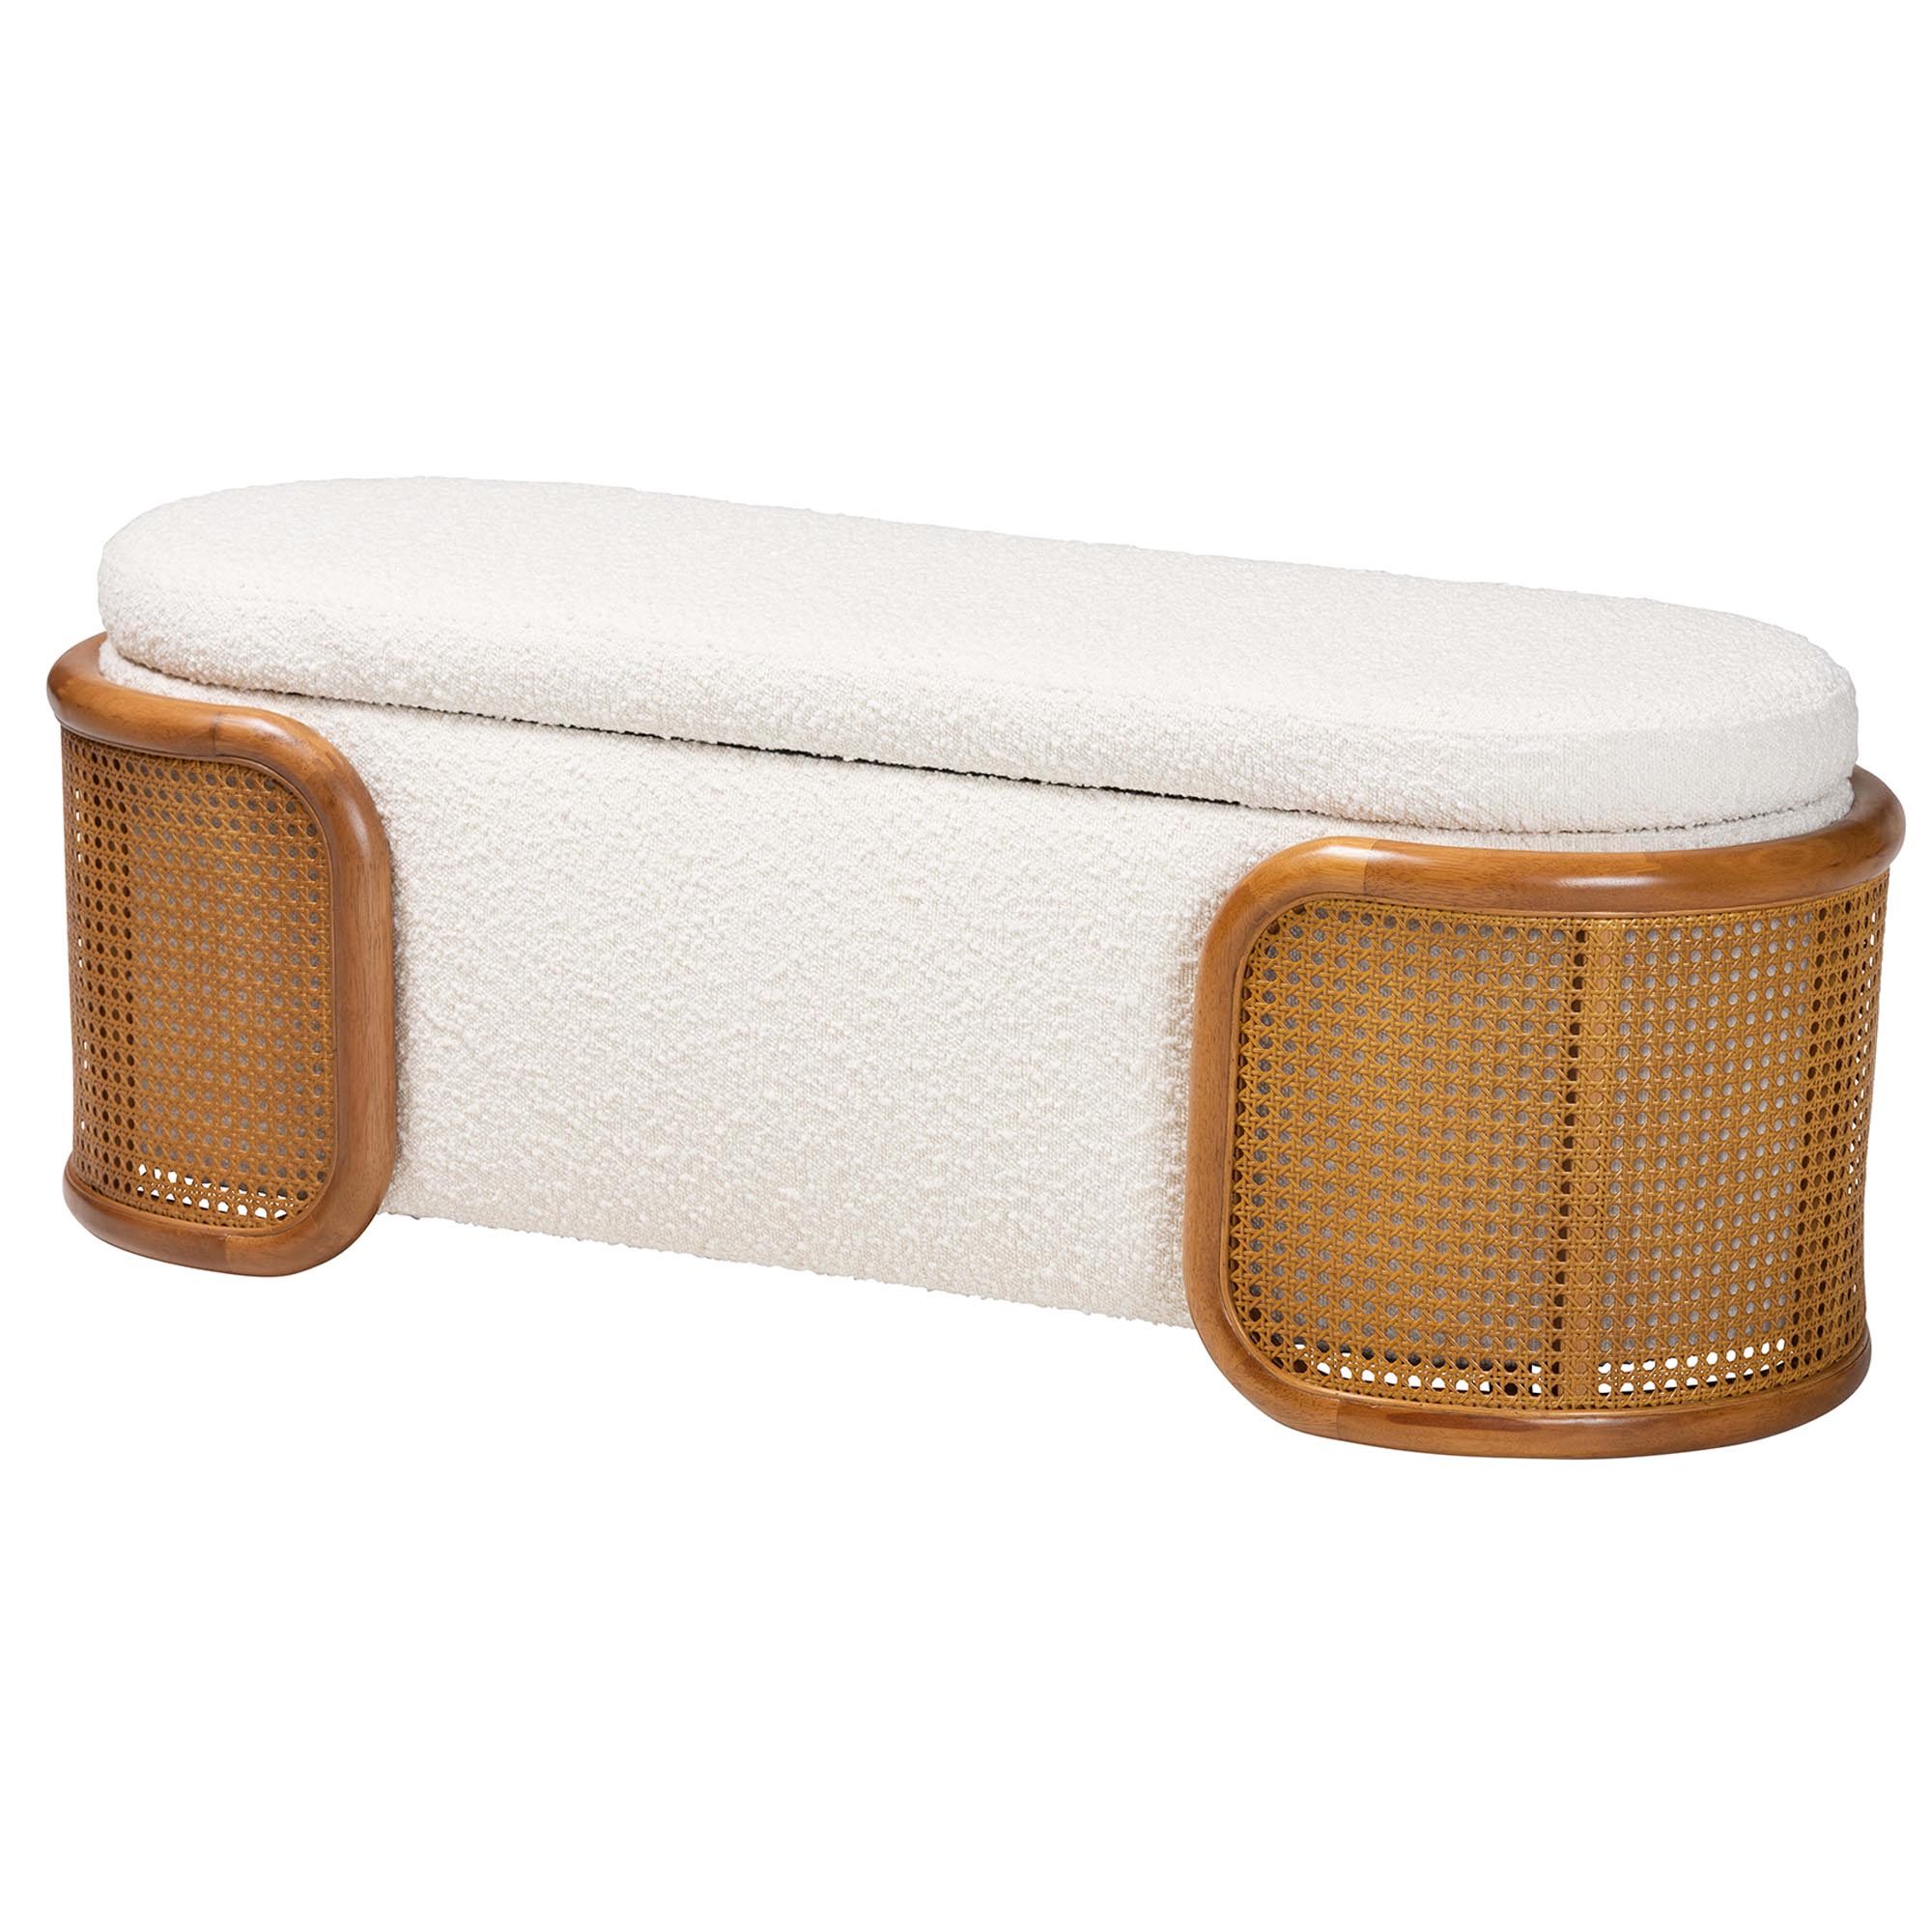 Baxton Studio Basira Japandi Cream Boucle Fabric Storage Bench with Woven Rattan